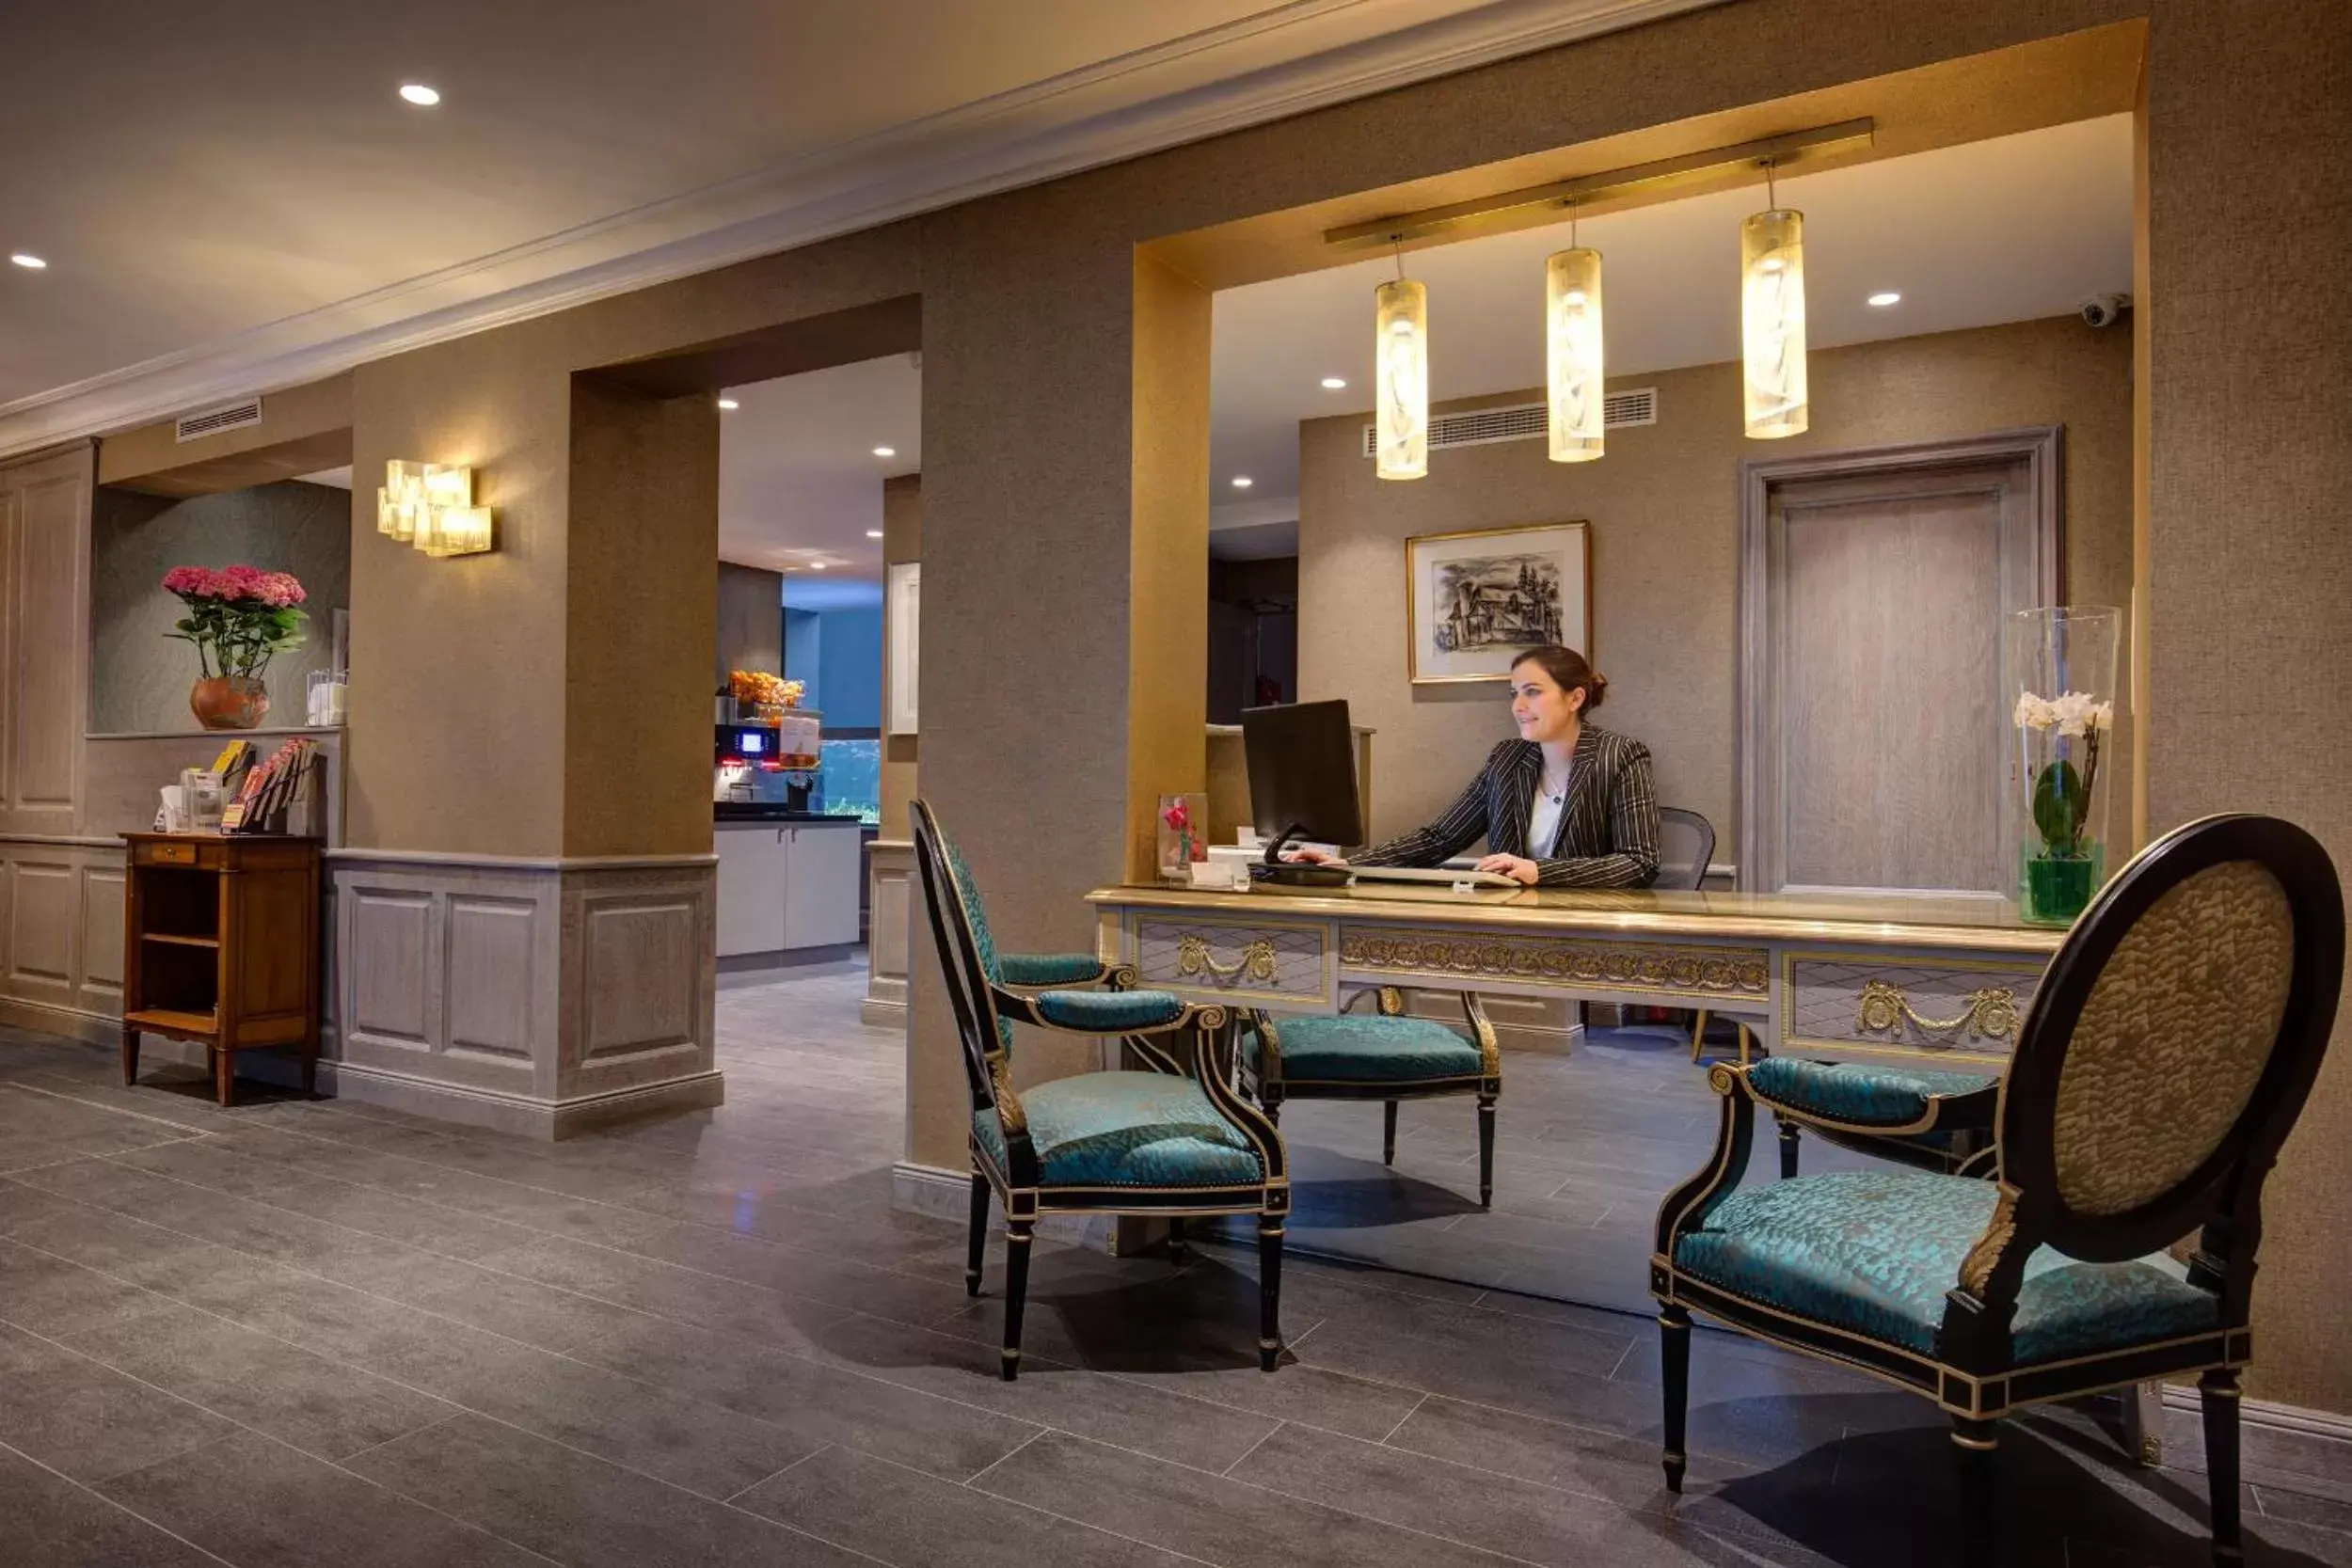 Lobby or reception, Lobby/Reception in Hotel Muguet